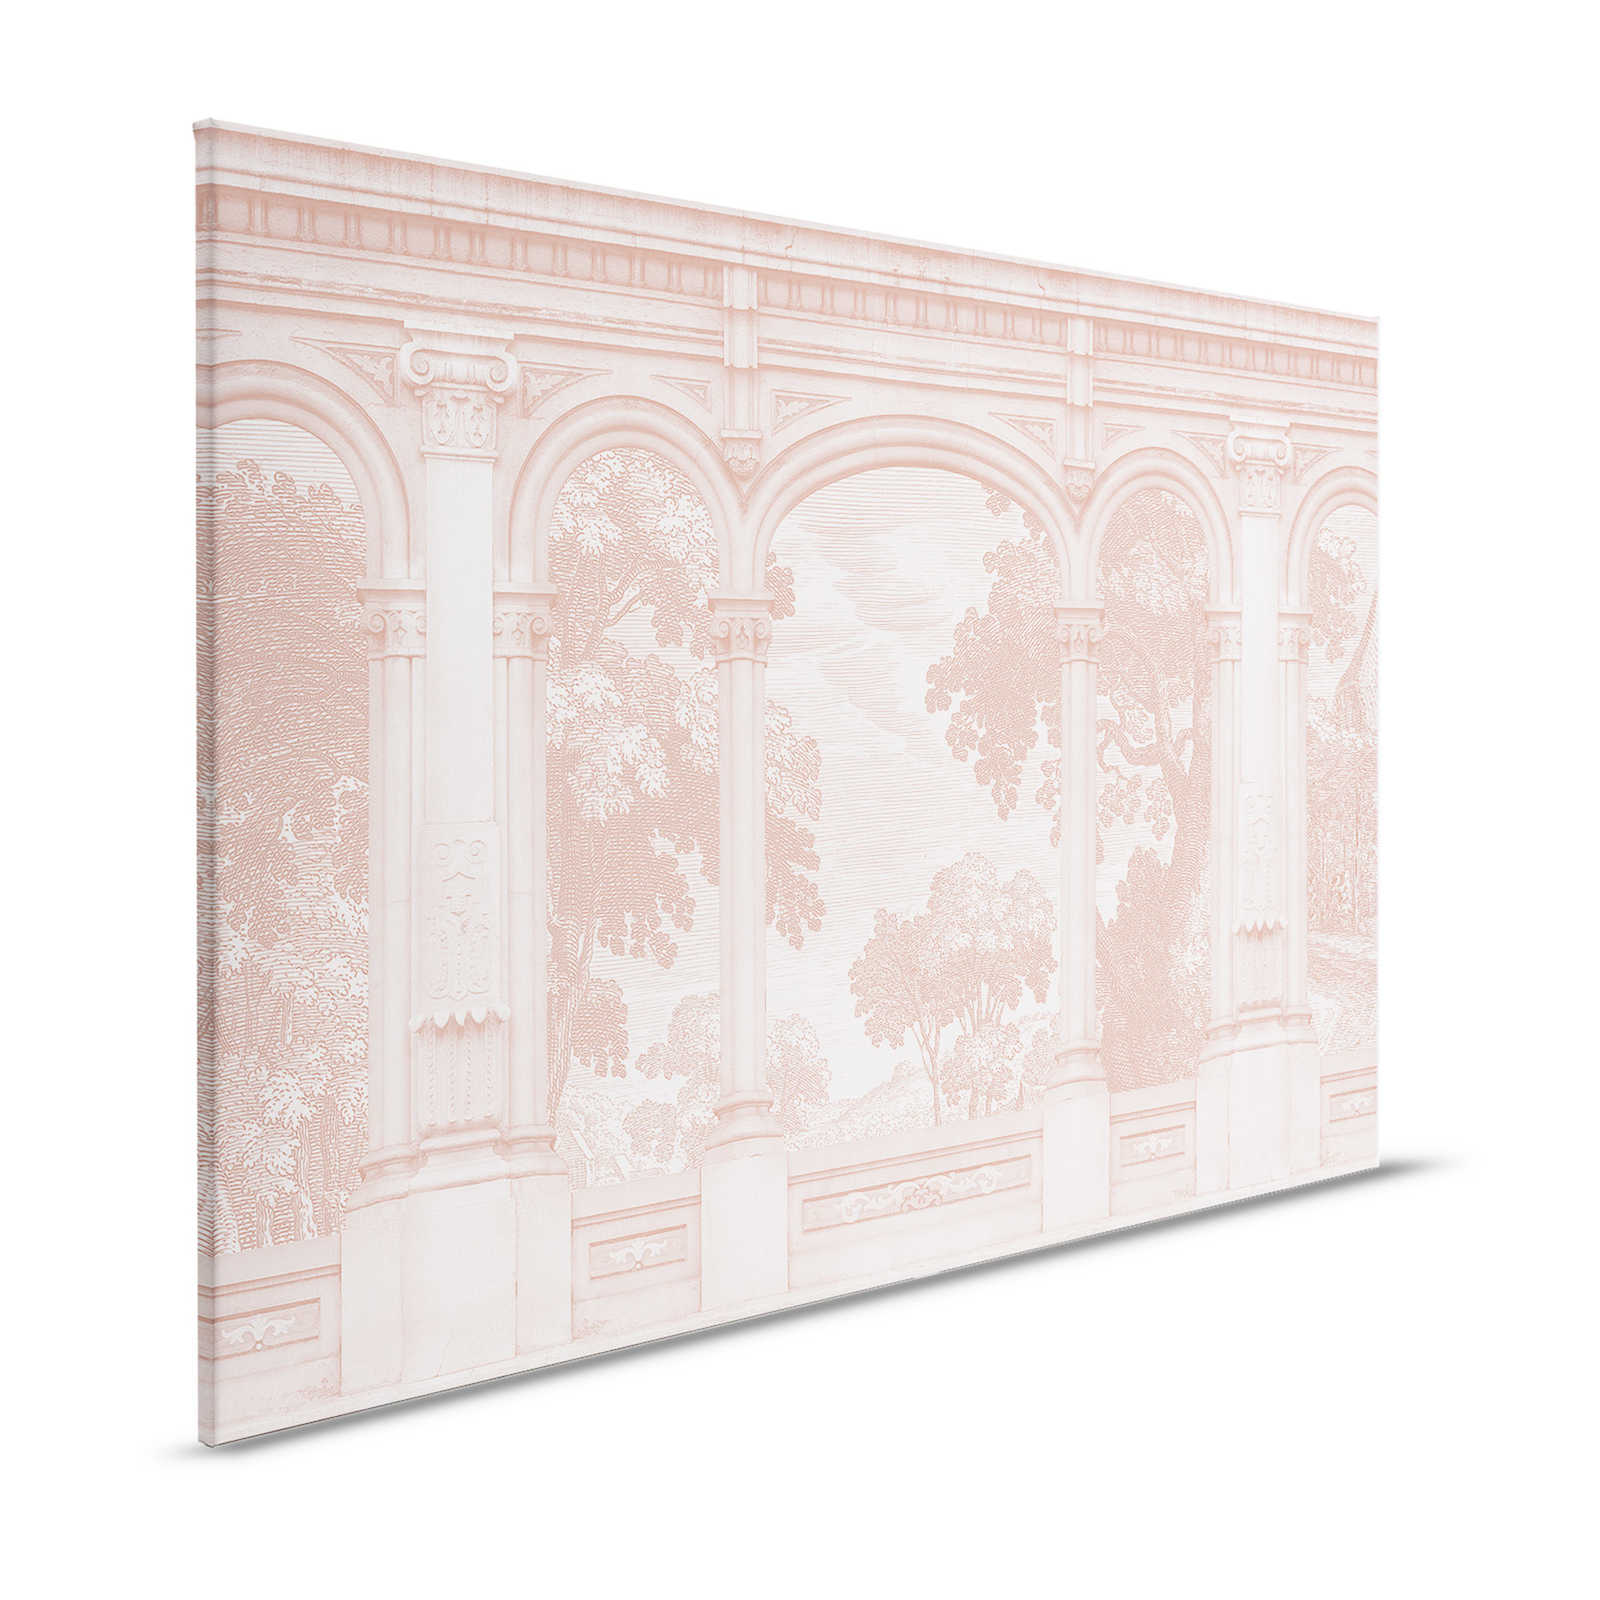 Roma 3 - Quadro su tela rosa Design storico con finestra ad arco - 1,20 m x 0,80 m
